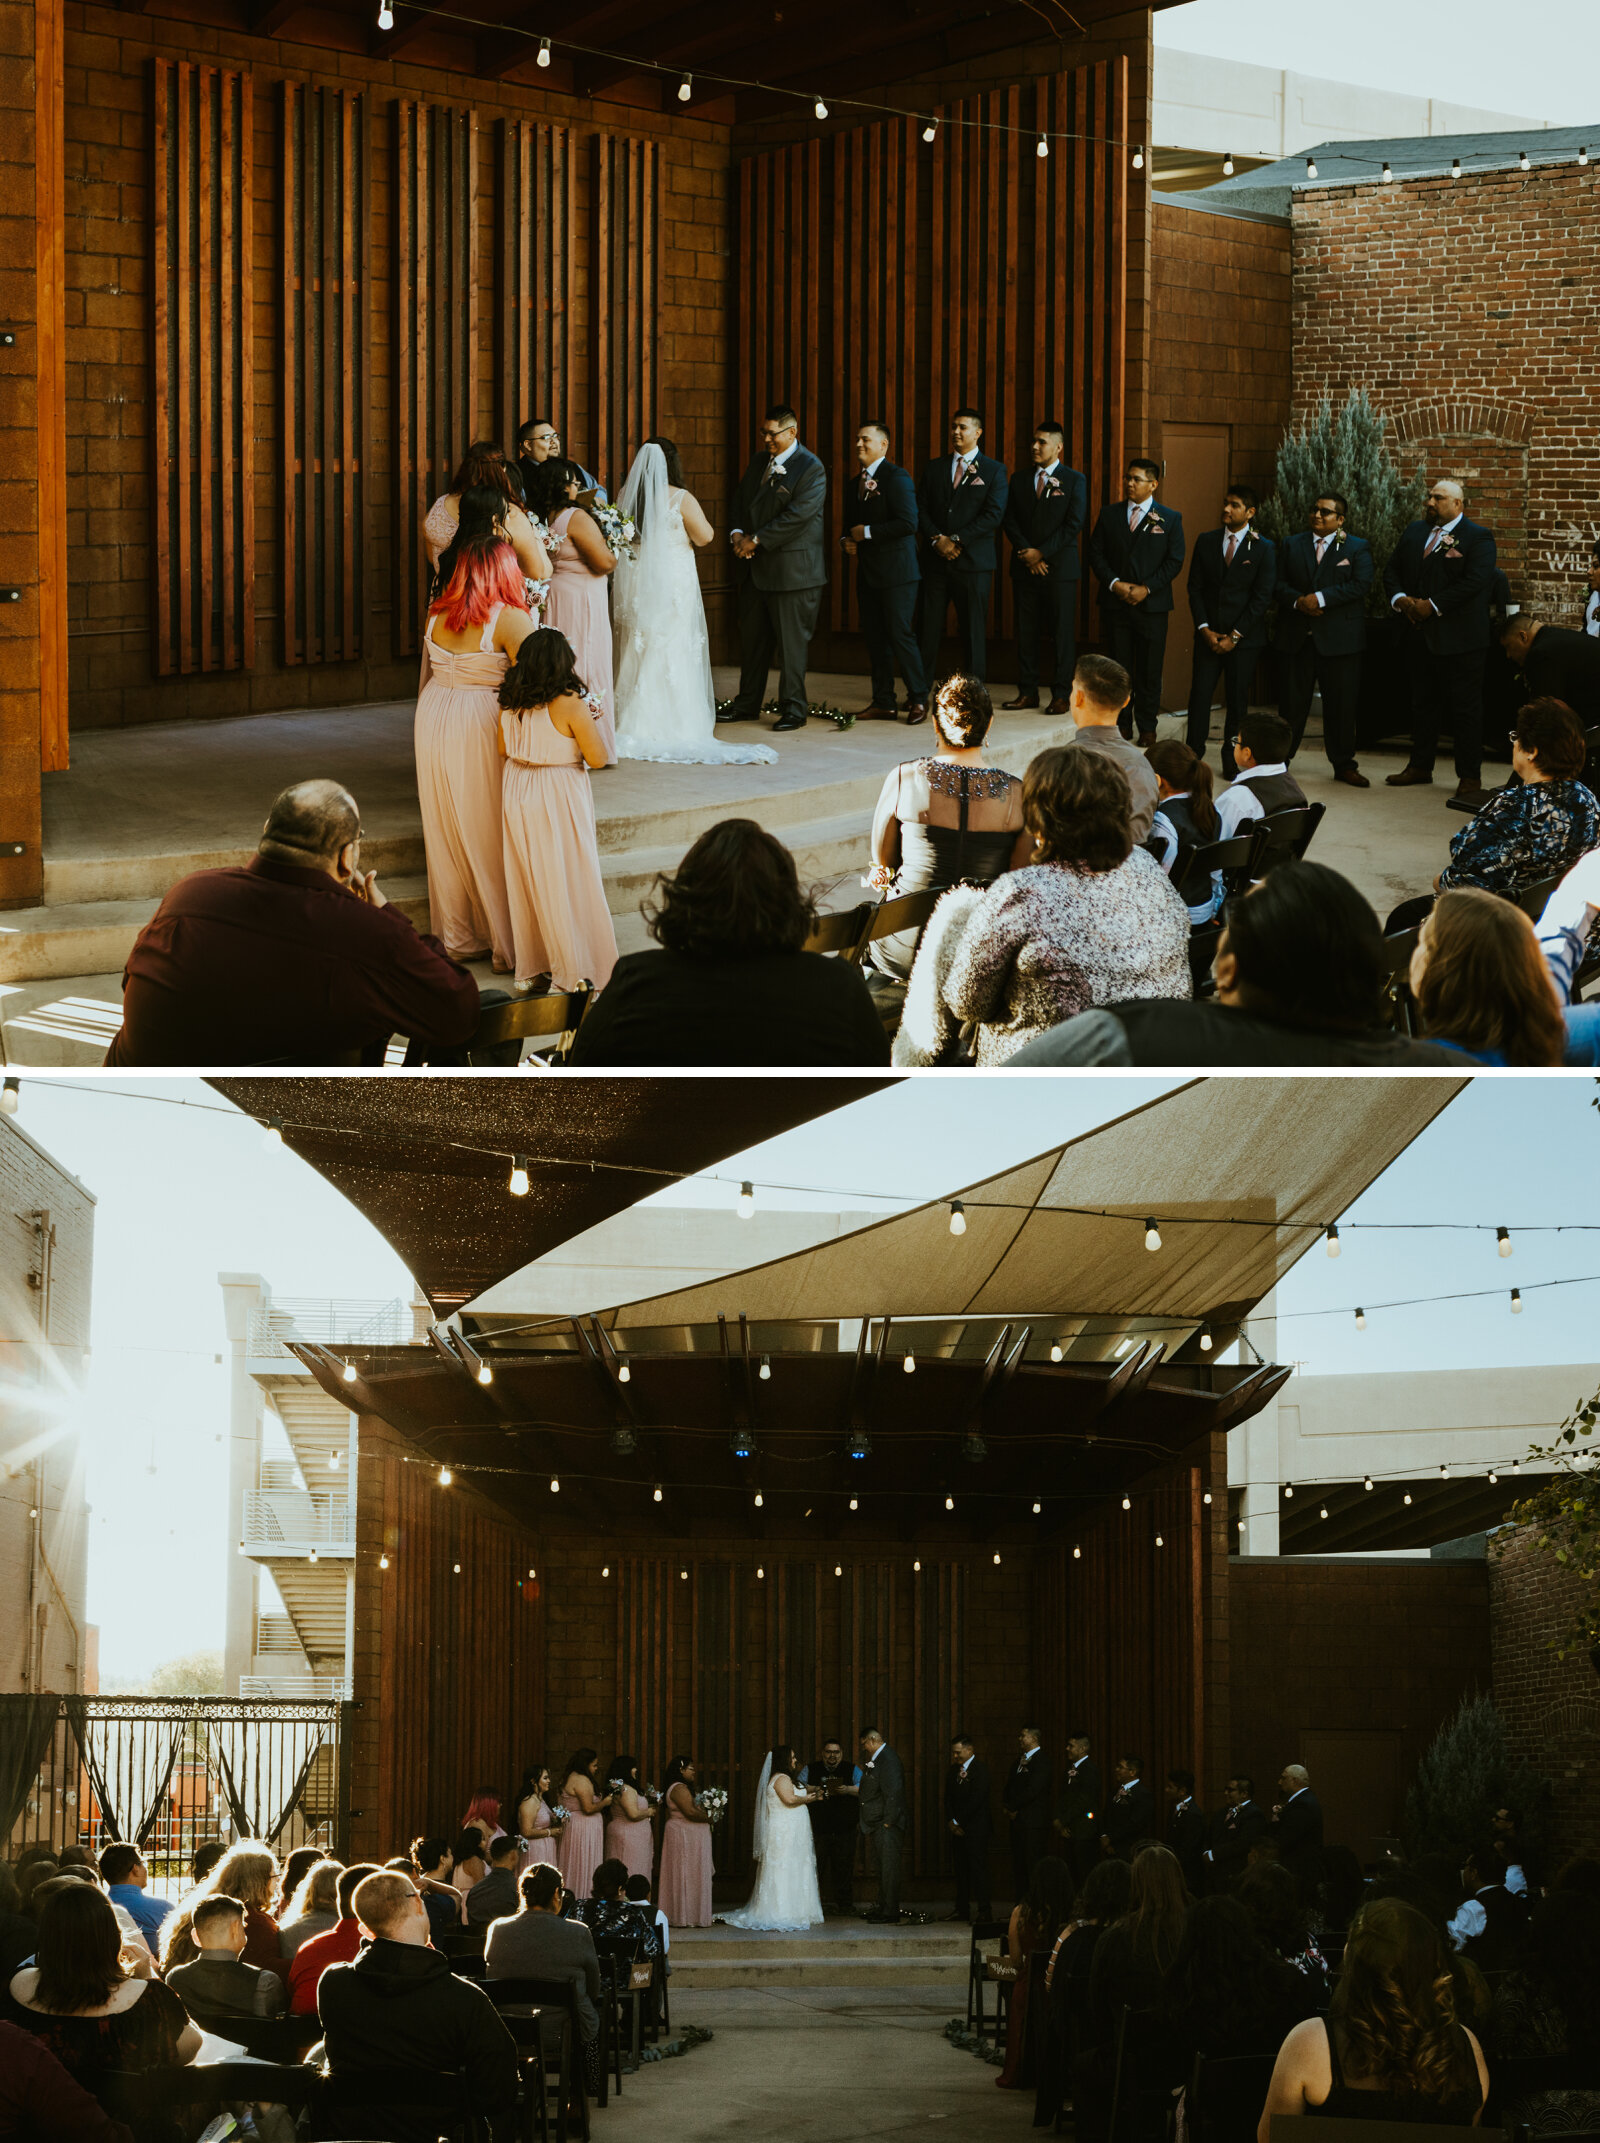 GRAND HIGHLAND HOTEL PRESCOTT ARIZONA WEDDING PHOTOGRAPHY WEDDING CEREMONY.jpg